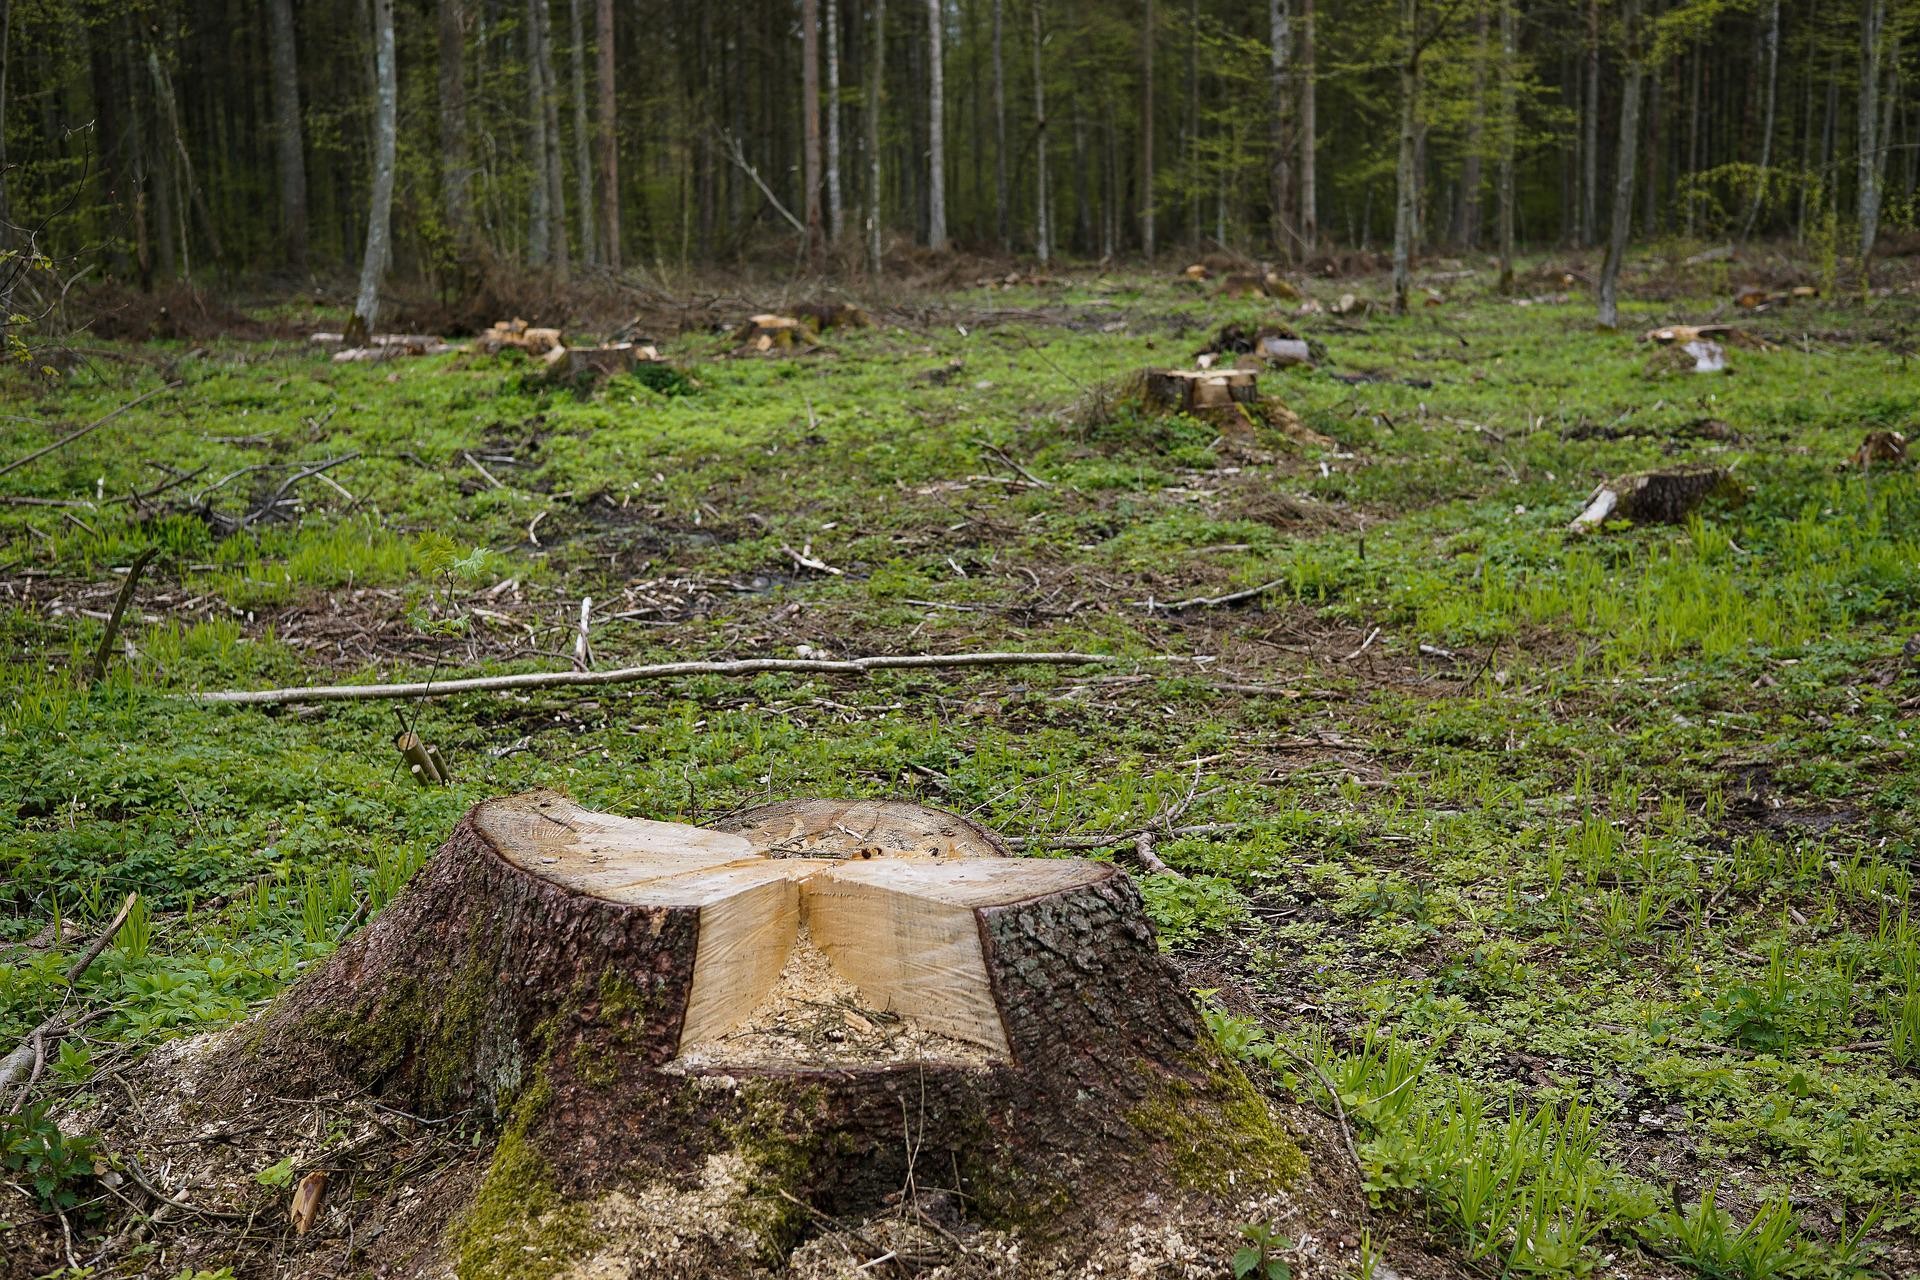 Nos últimos 60 anos, a área florestal global diminuiu em 81,7 milhões de hectares (Foto: Reprodução/Pixabay)